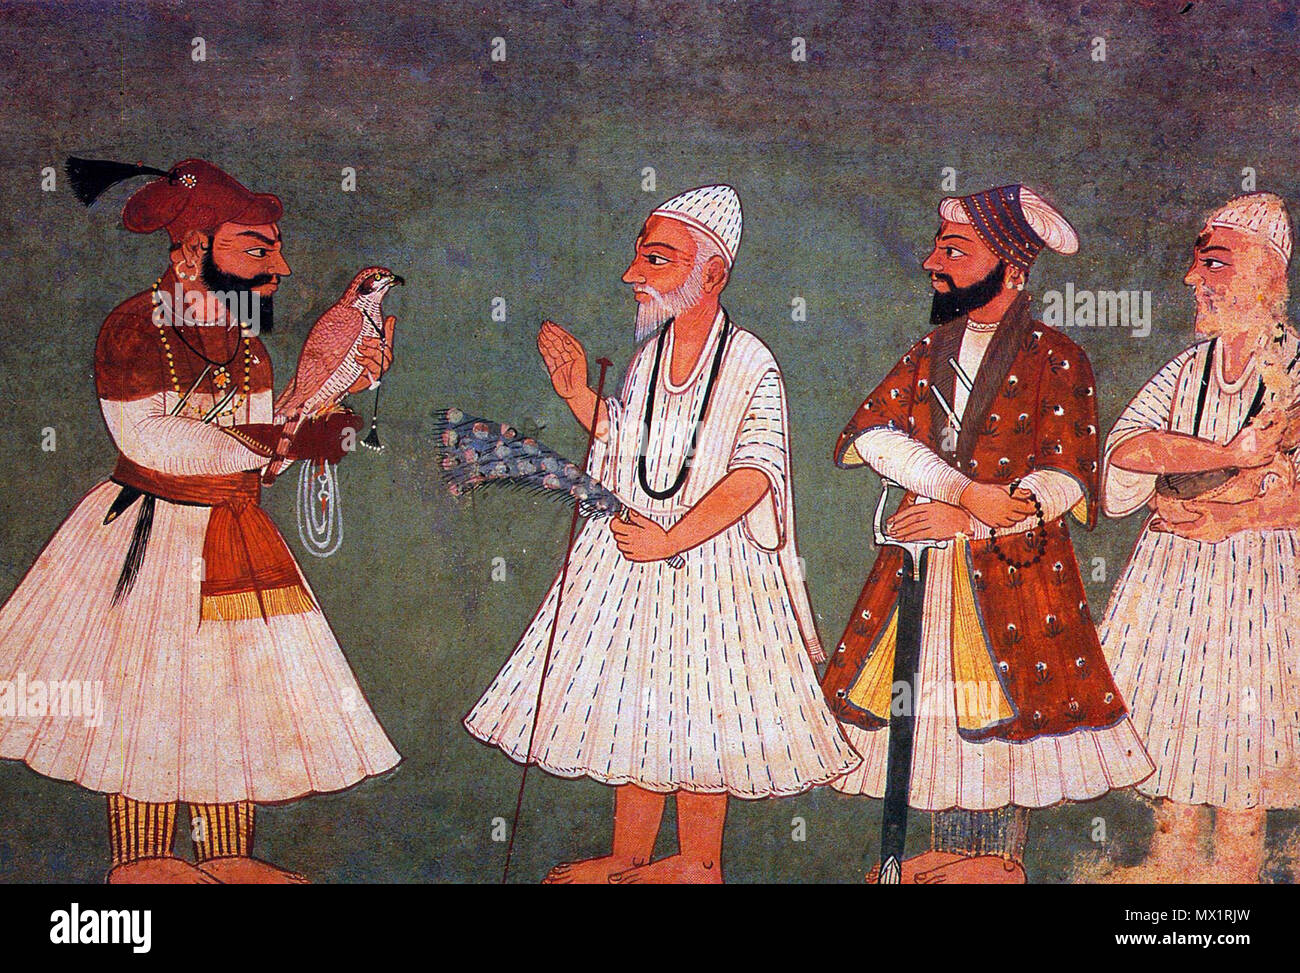 . Guru Gobind Singh (oiseau) rencontre avec le gourou Nanak Dev. Une peinture du 18ème siècle d'une réunion imaginaire. 18e siècle. Inconnu 258 Guru Gobind Singh répond à Guru Nanak Dev Banque D'Images